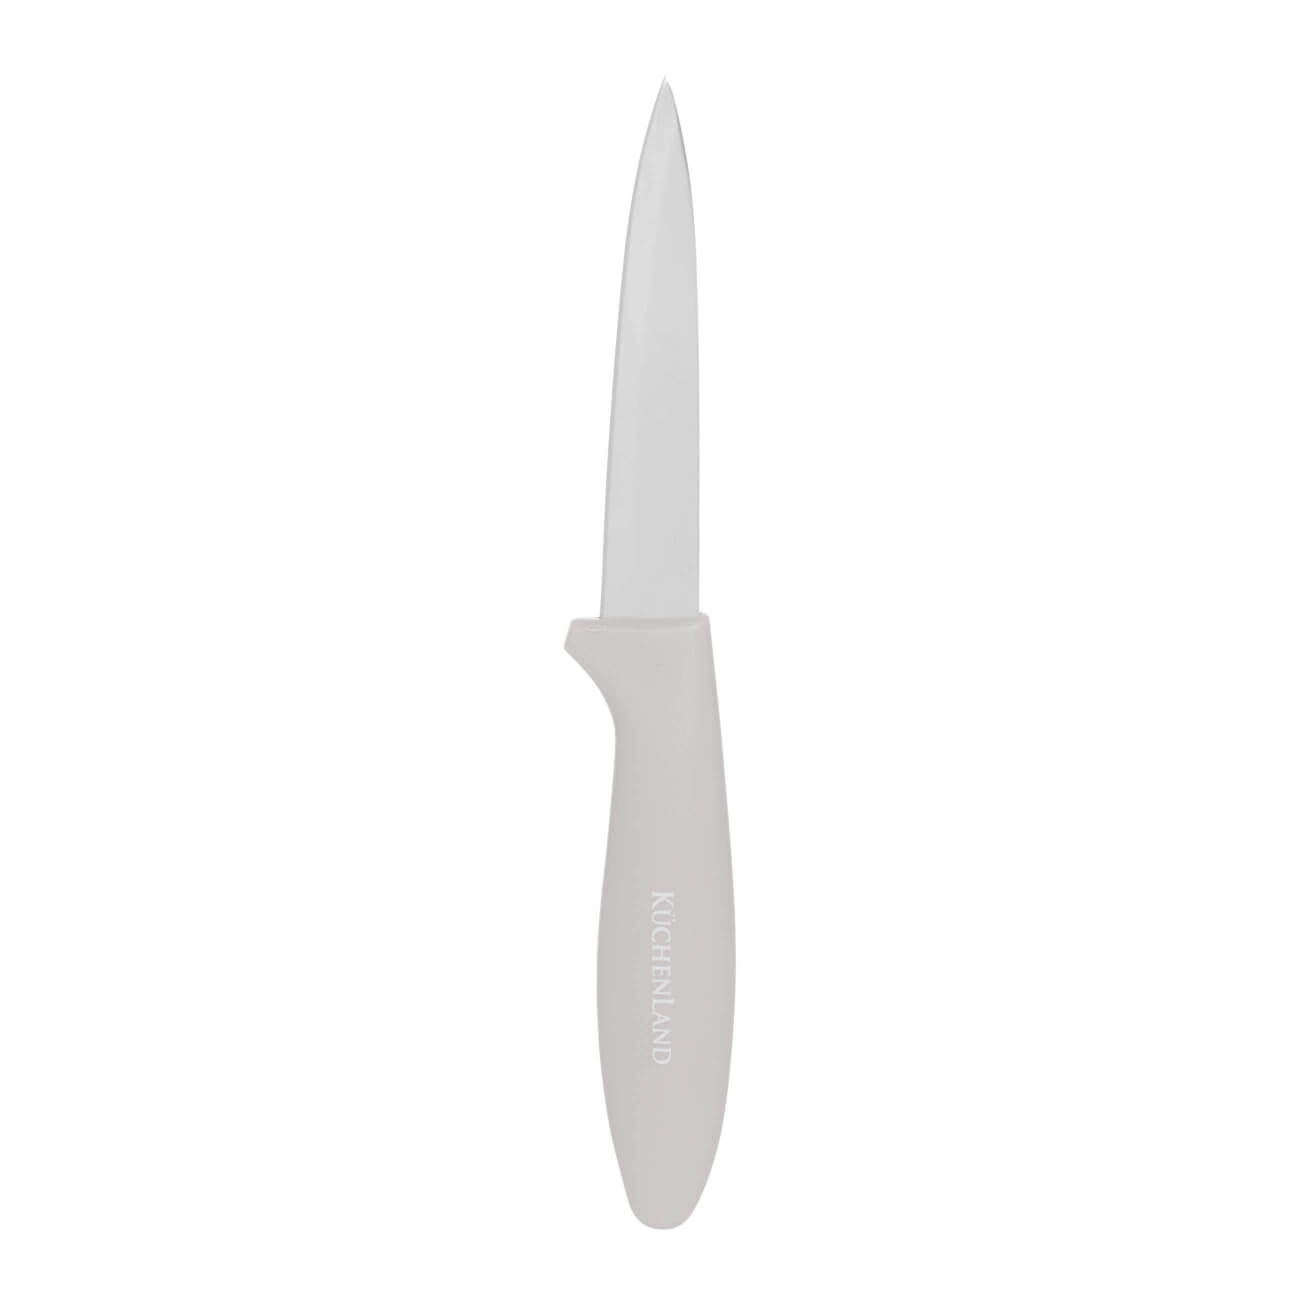 Нож для чистки овощей, 9 см, сталь/пластик, серо-коричневый, Regular изображение № 1